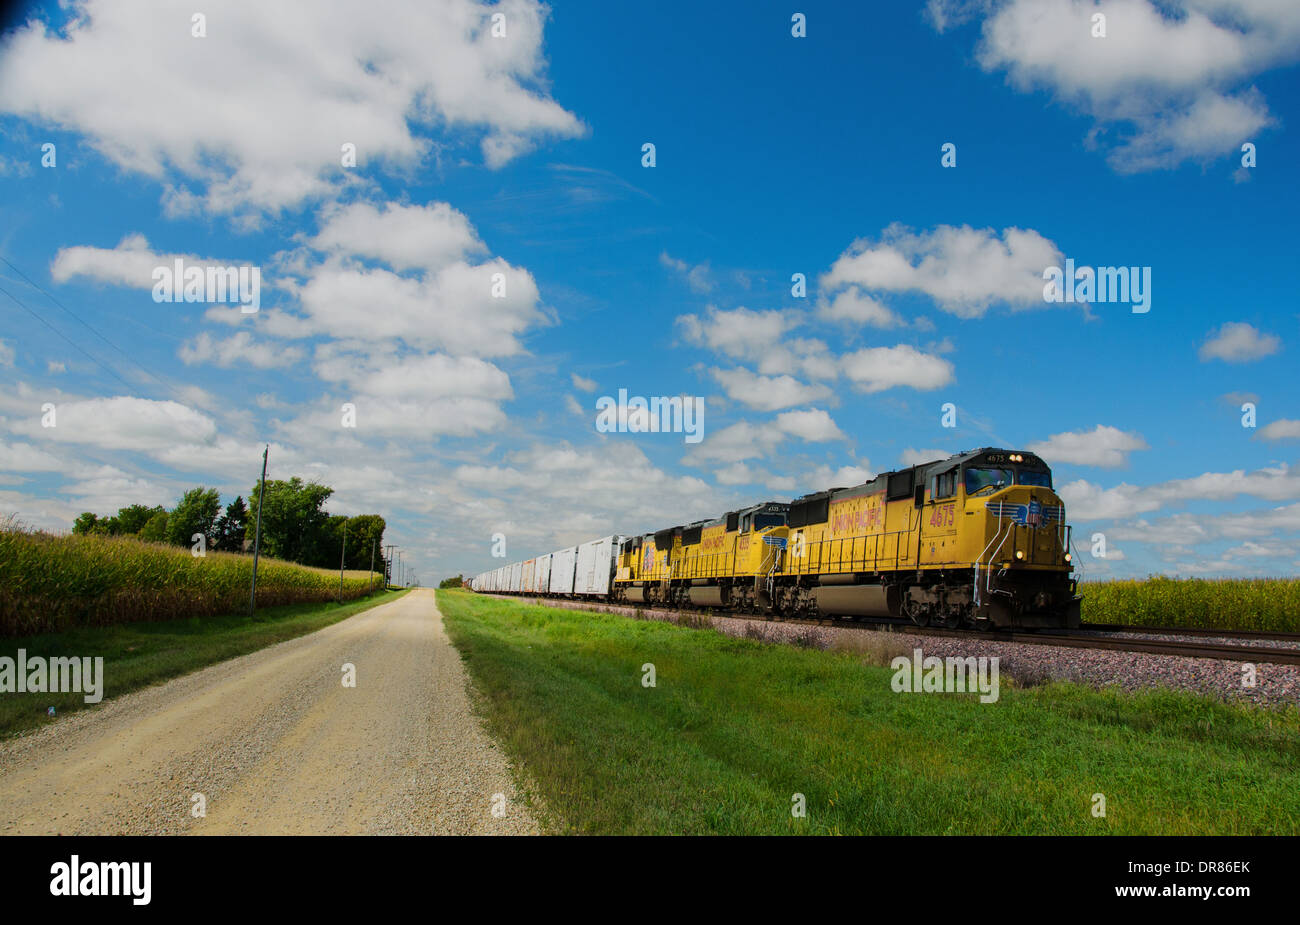 Lincoln Highway strada di ghiaia accanto ai binari della ferrovia dove la Union Pacific treno è in esecuzione nei pressi di Ashton, Illinois Foto Stock